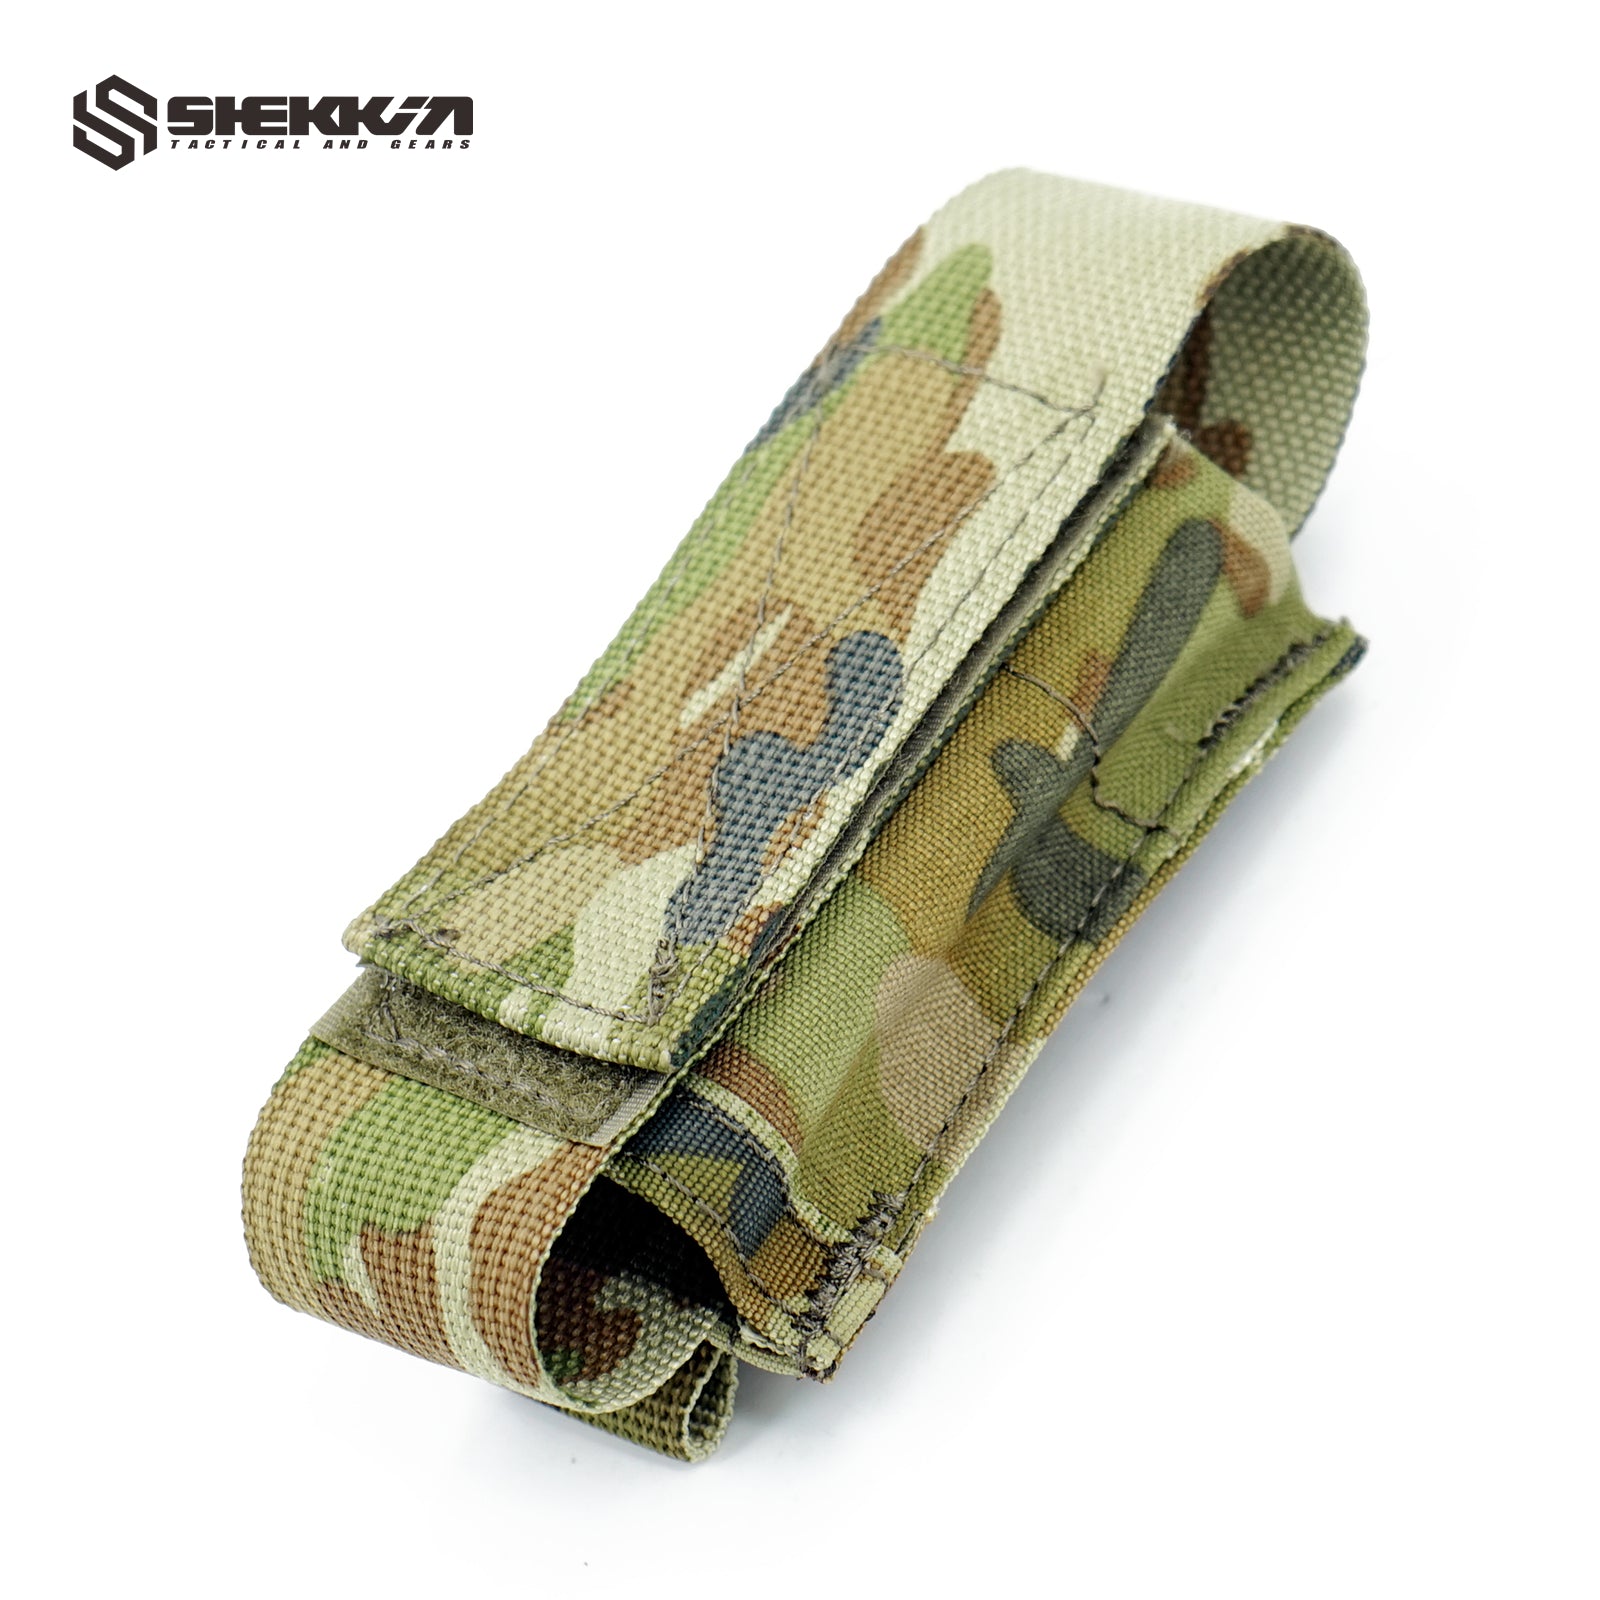 AMCU 40mm Distraction Grenade Single Pouch - Shekkin Gears